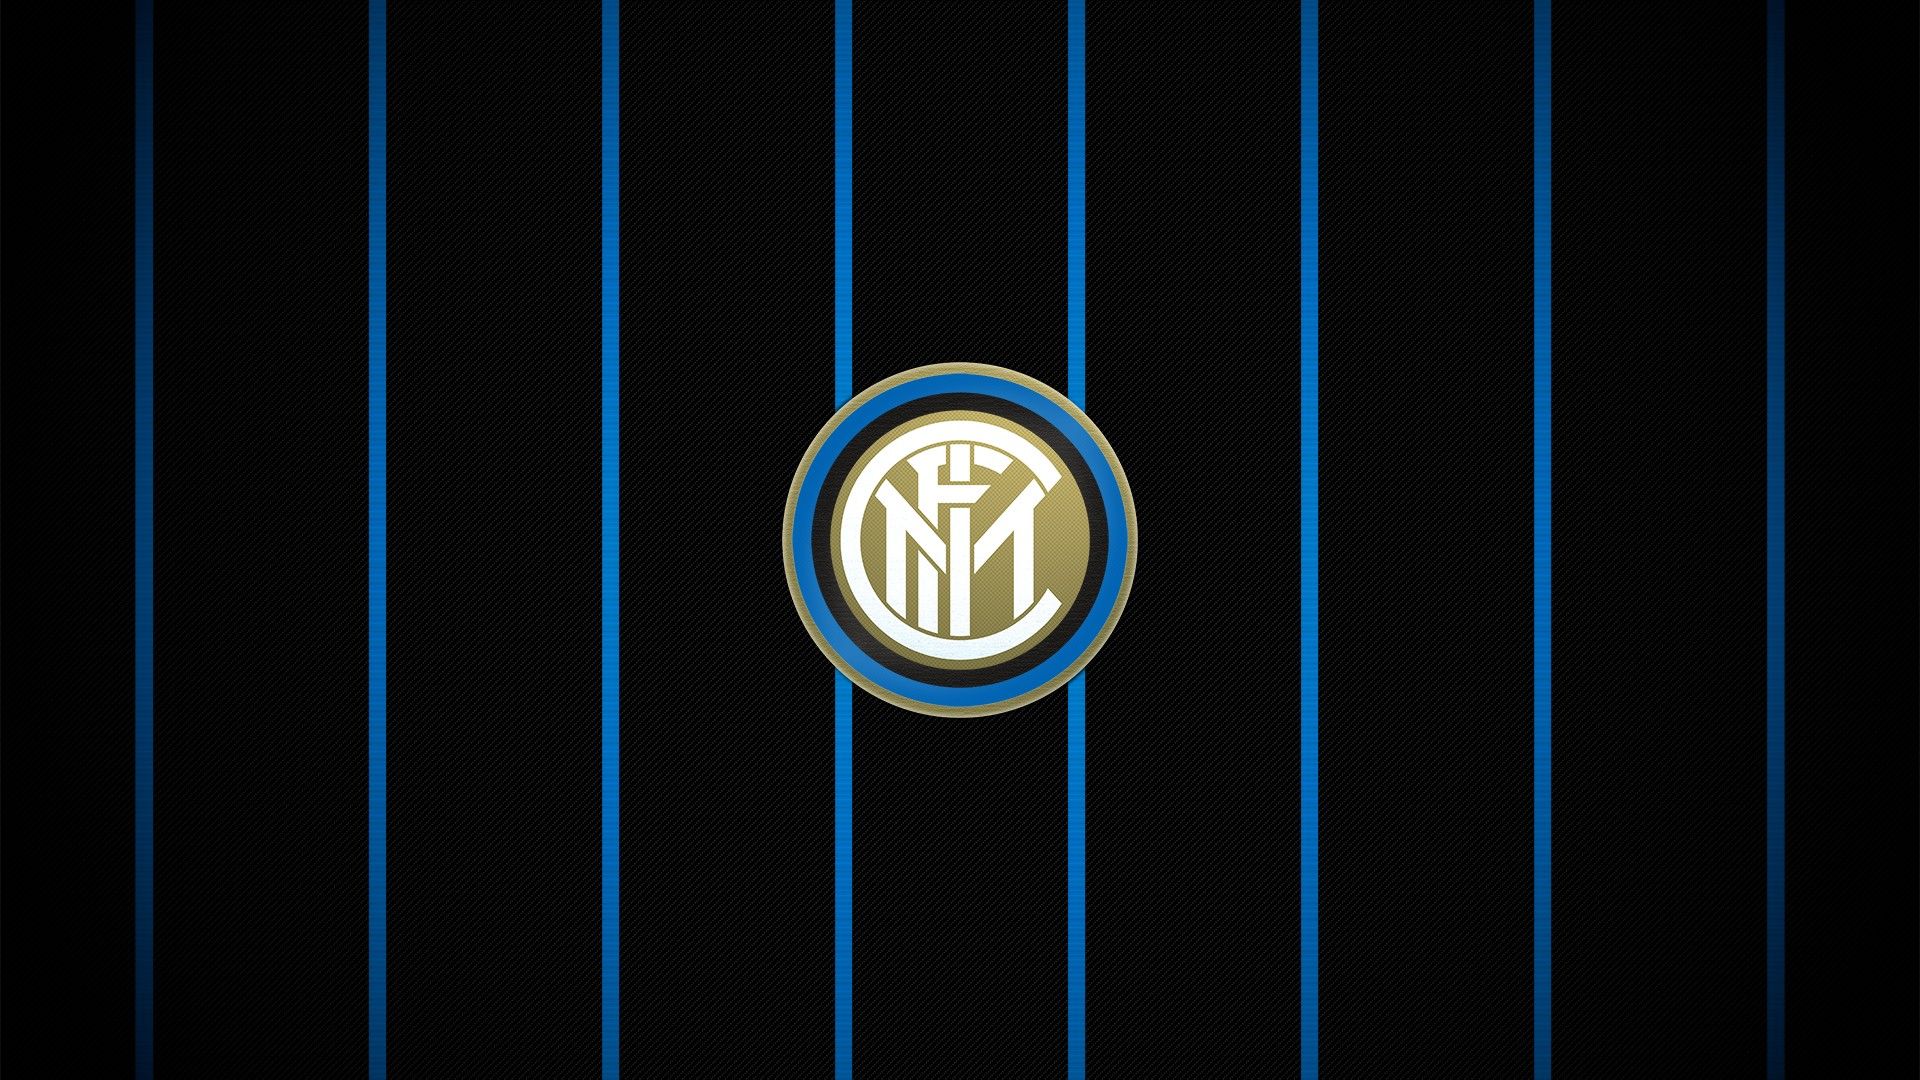 Inter Milan FC fondo de pantalla de alta definición | Fondo de pantalla de fútbol 2019